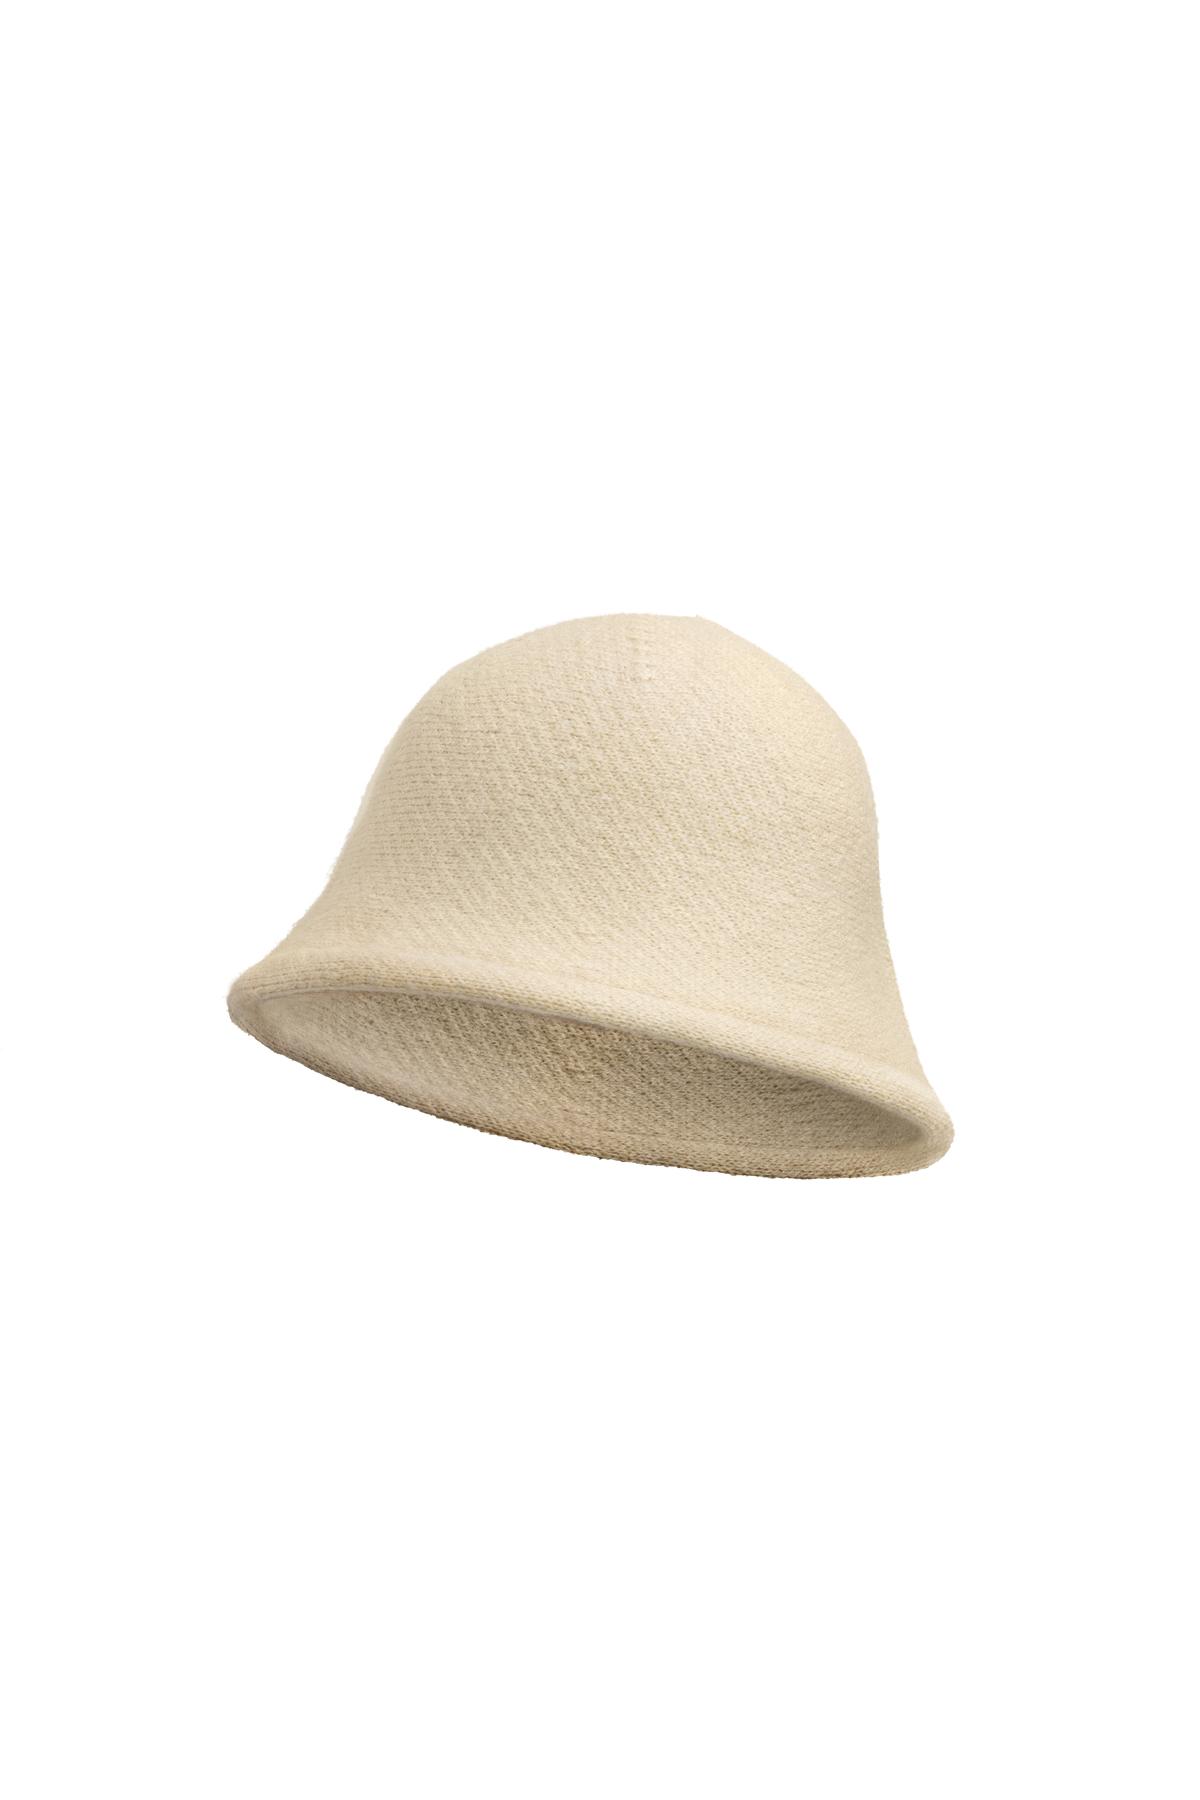 Cappello da pescatore tinta unita Off-white Acrylic h5 